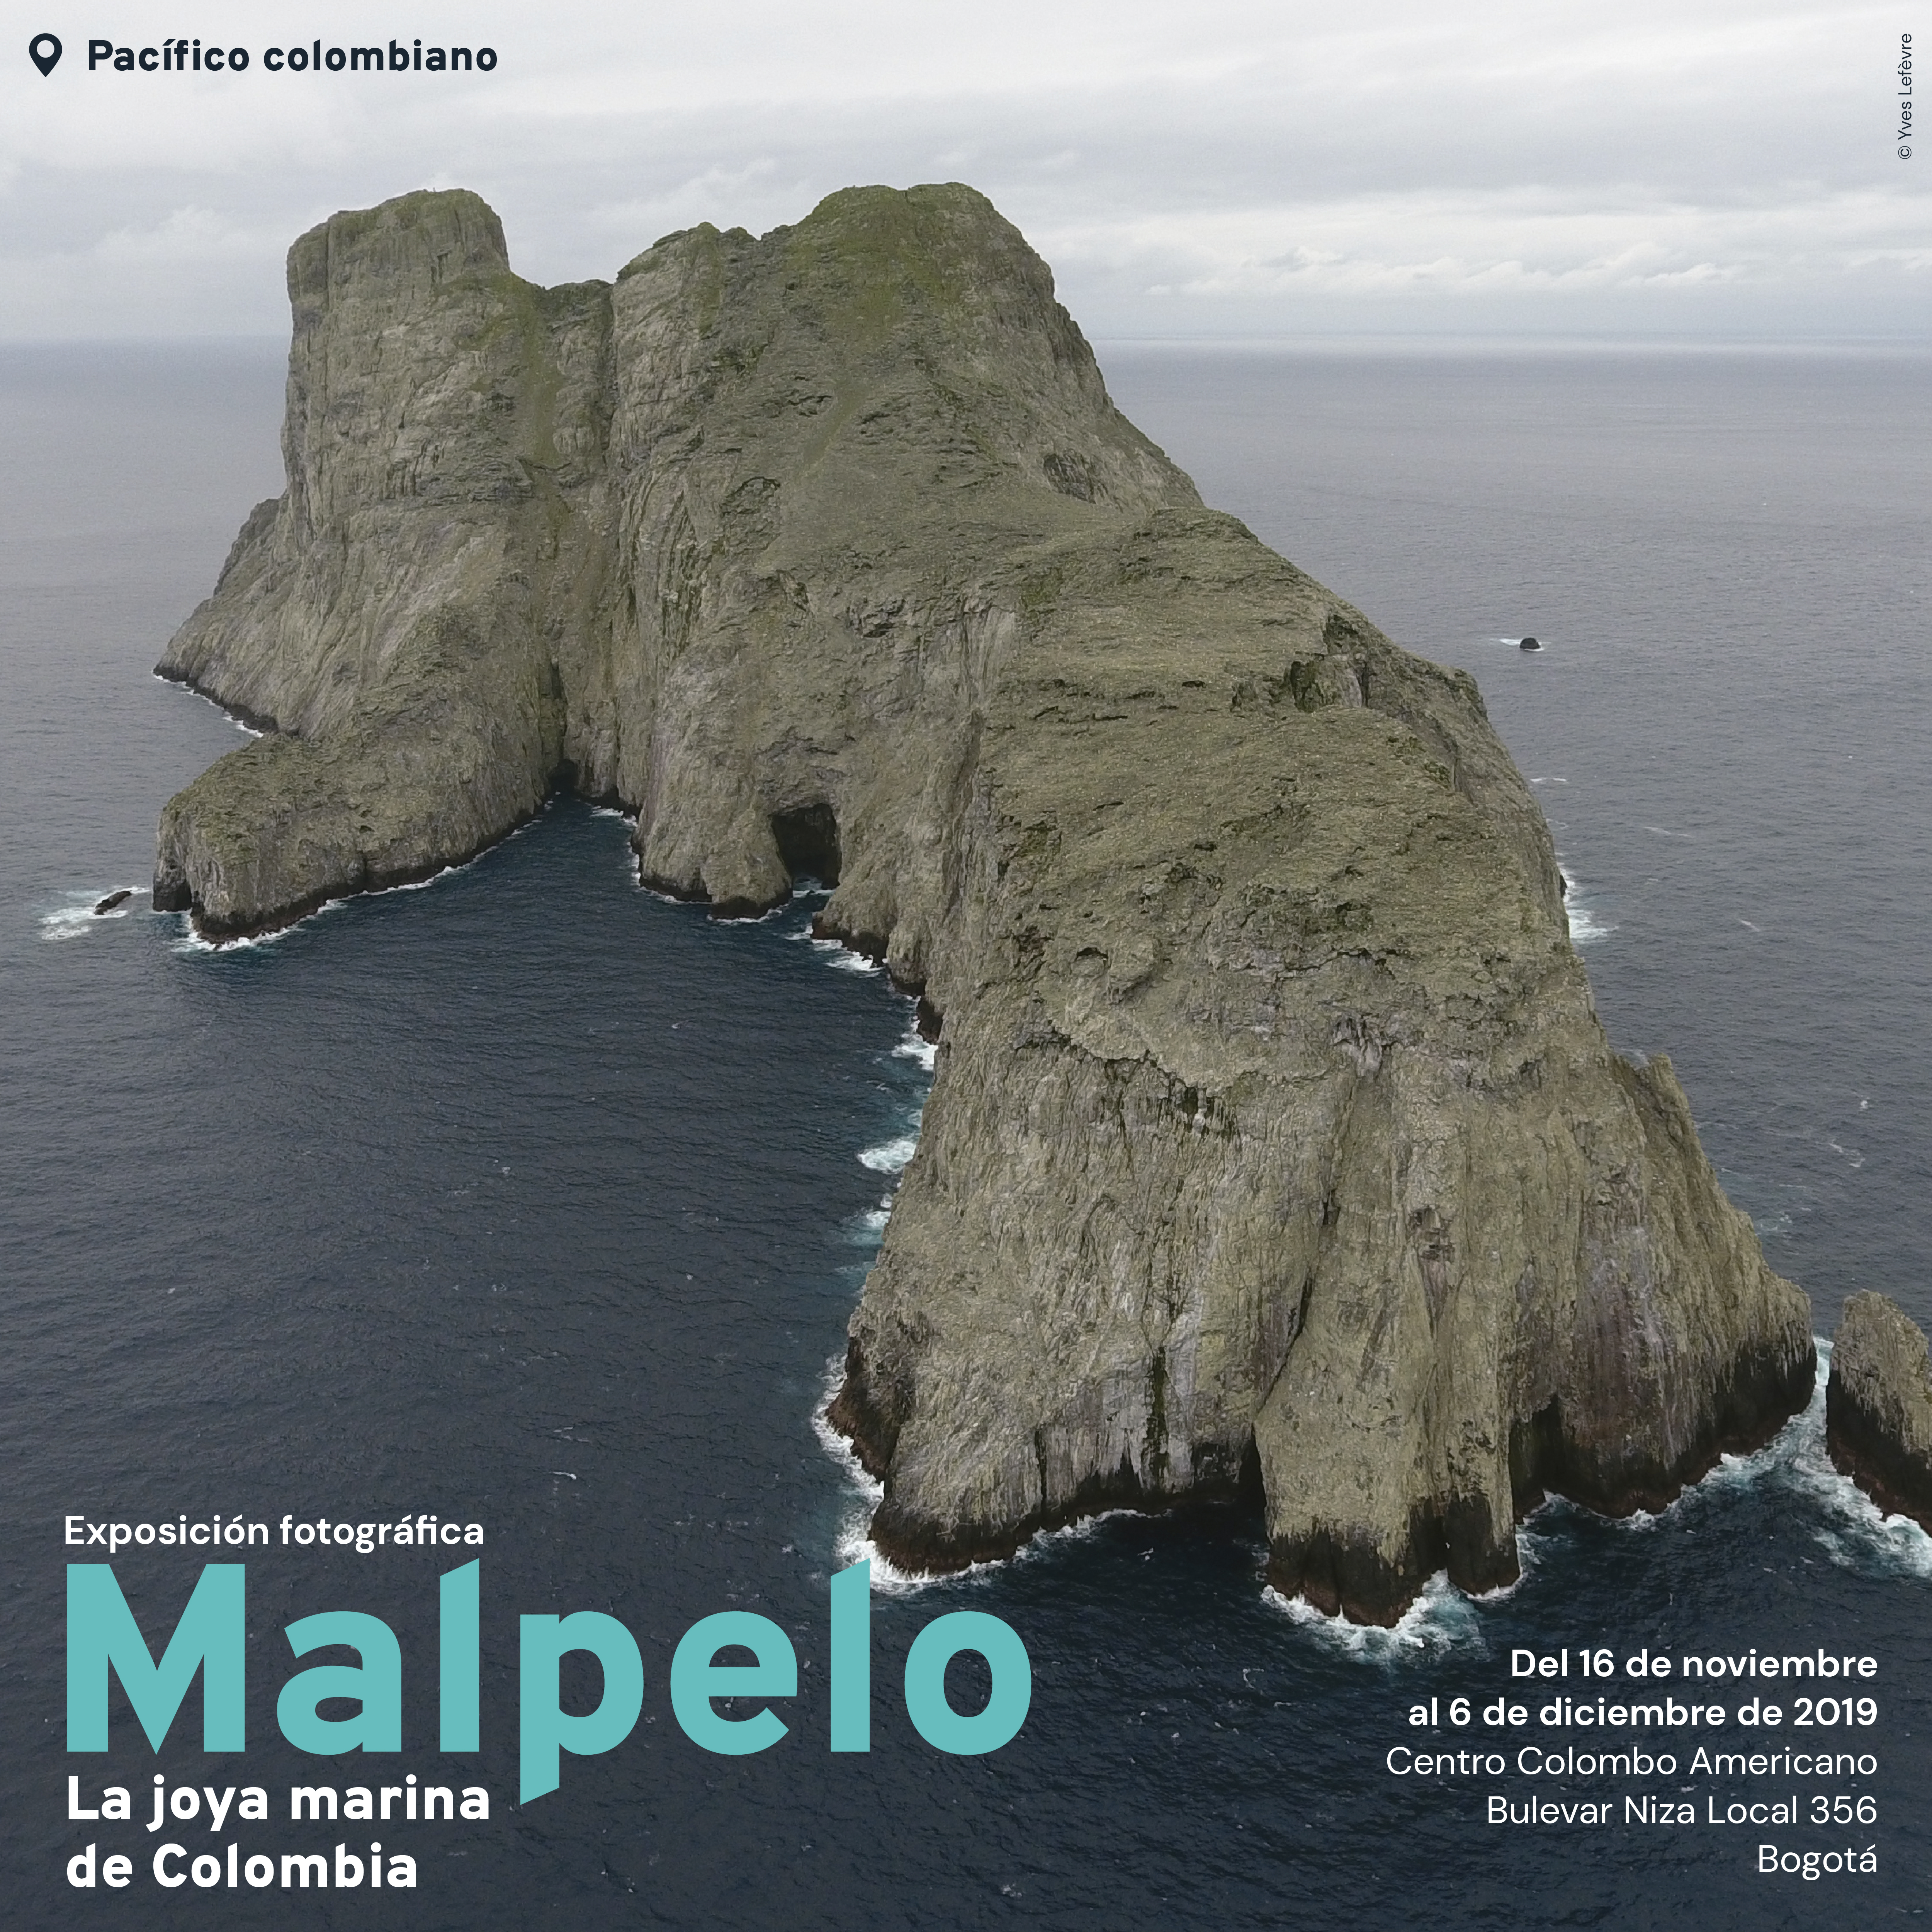 Exposición Fotográfica Malpelo la joya marina de Colombia